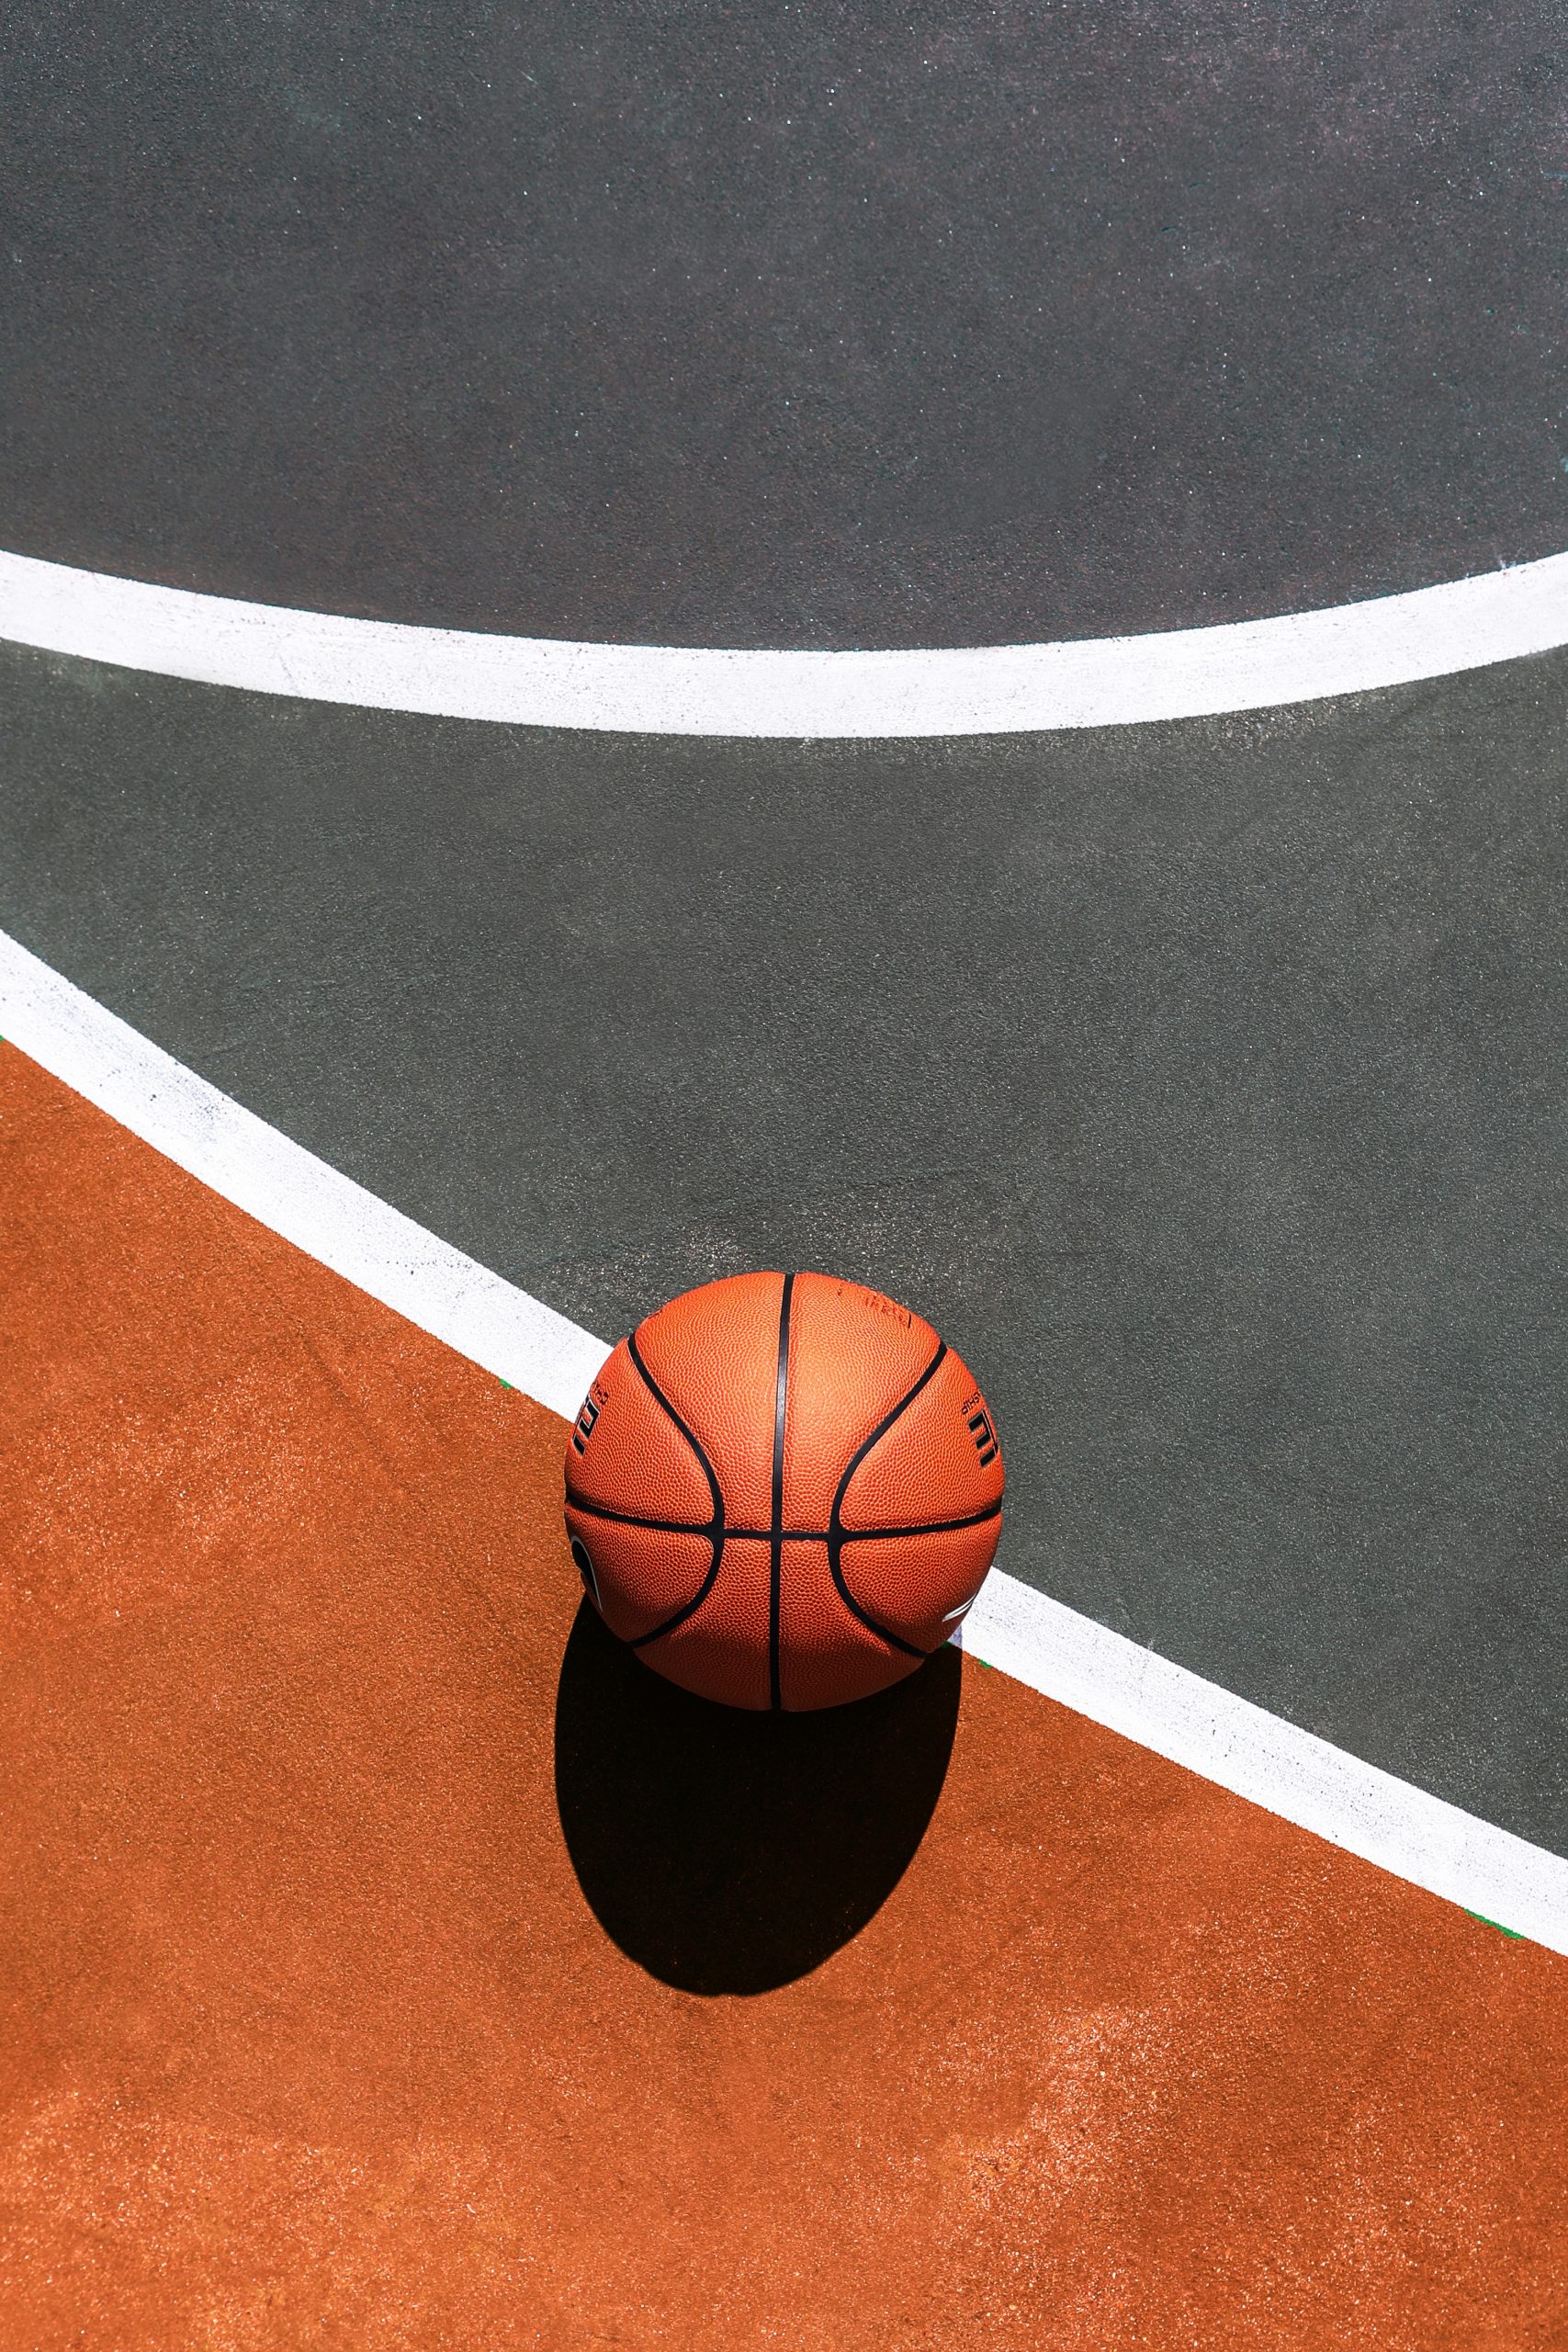 Brown basketball